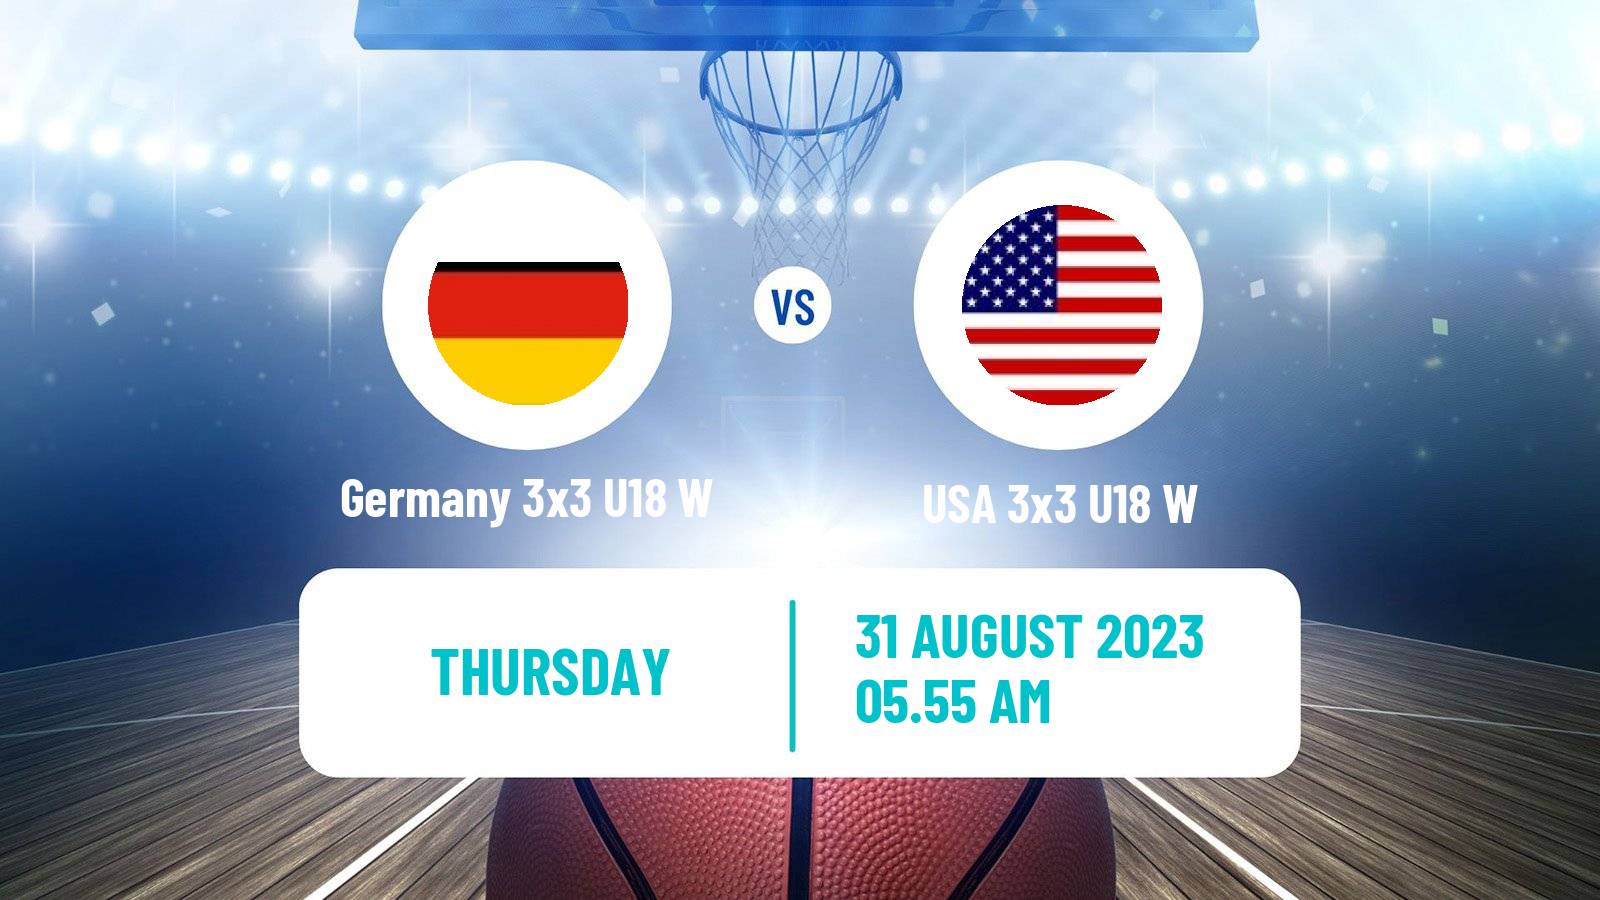 Basketball World Cup Basketball 3x3 U18 Women Germany 3x3 U18 W - USA 3x3 U18 W